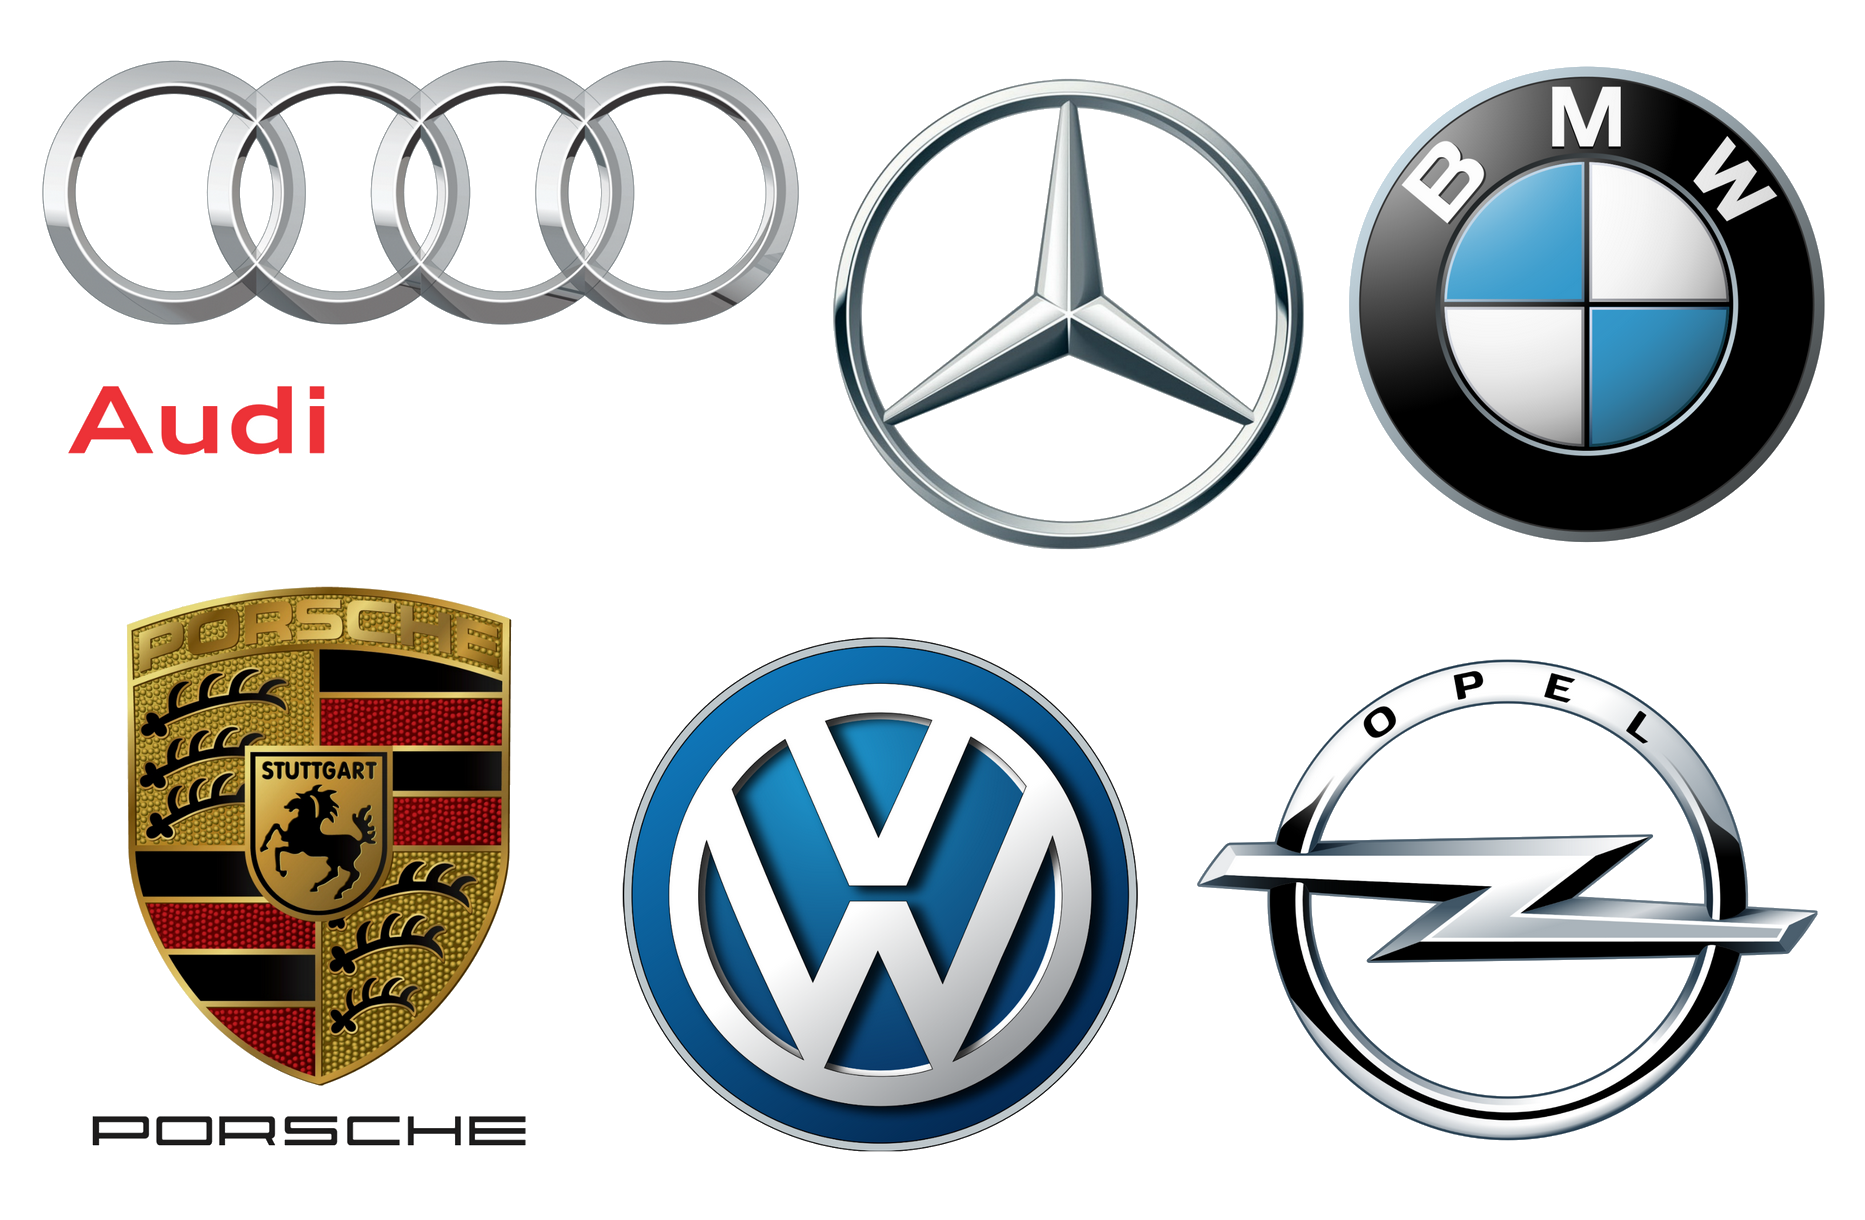 car manufacturers logos and names